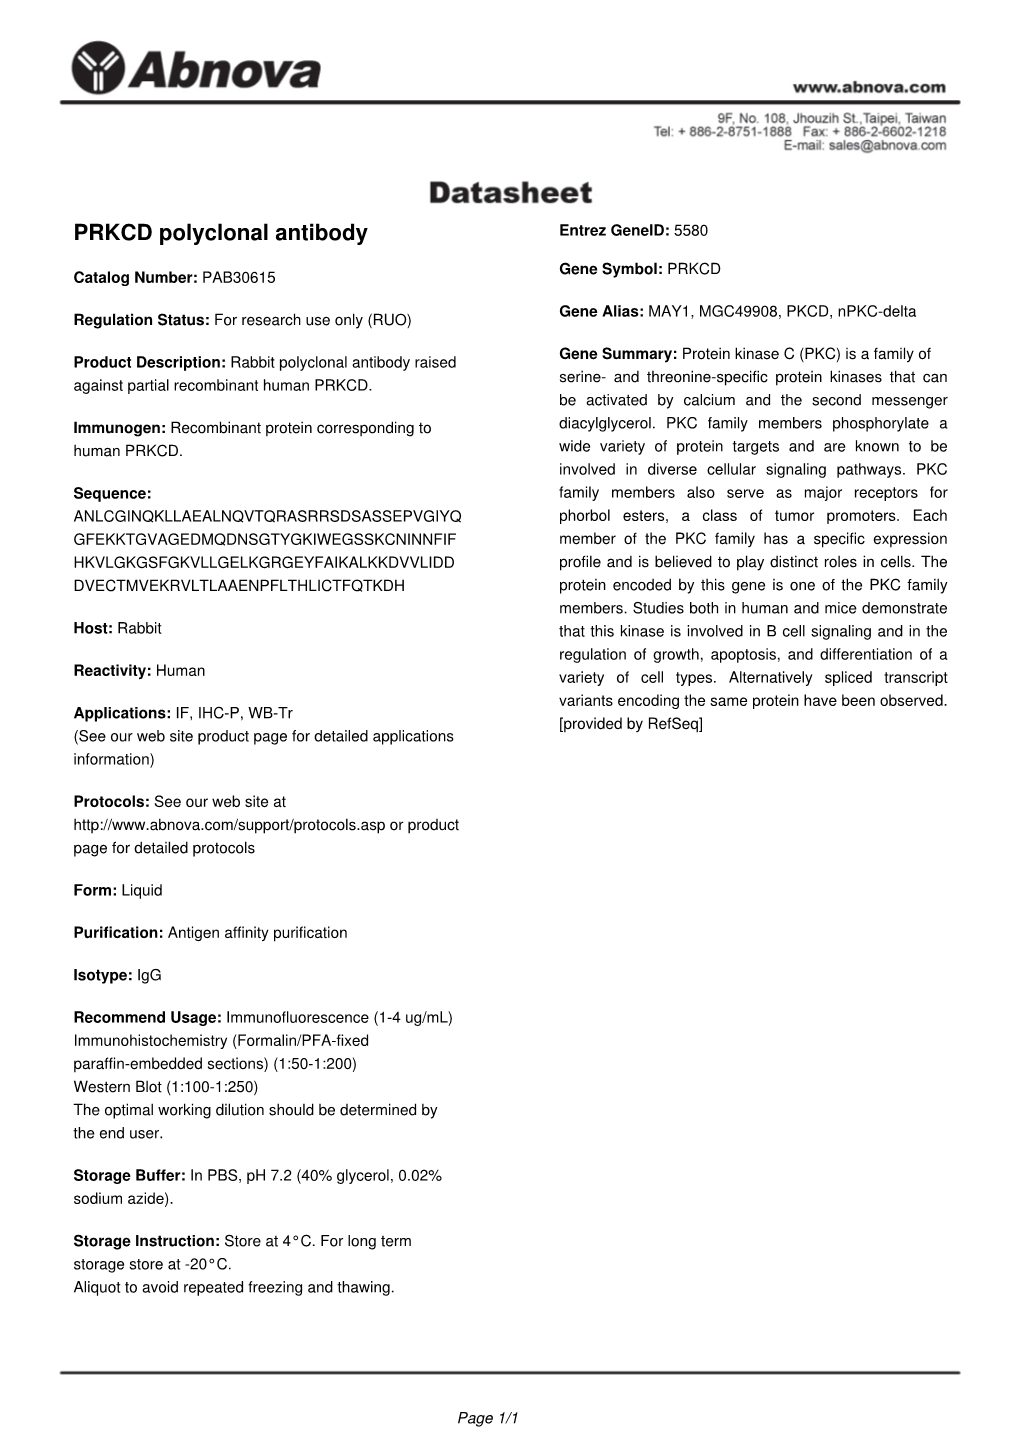 PRKCD Polyclonal Antibody Entrez Geneid: 5580